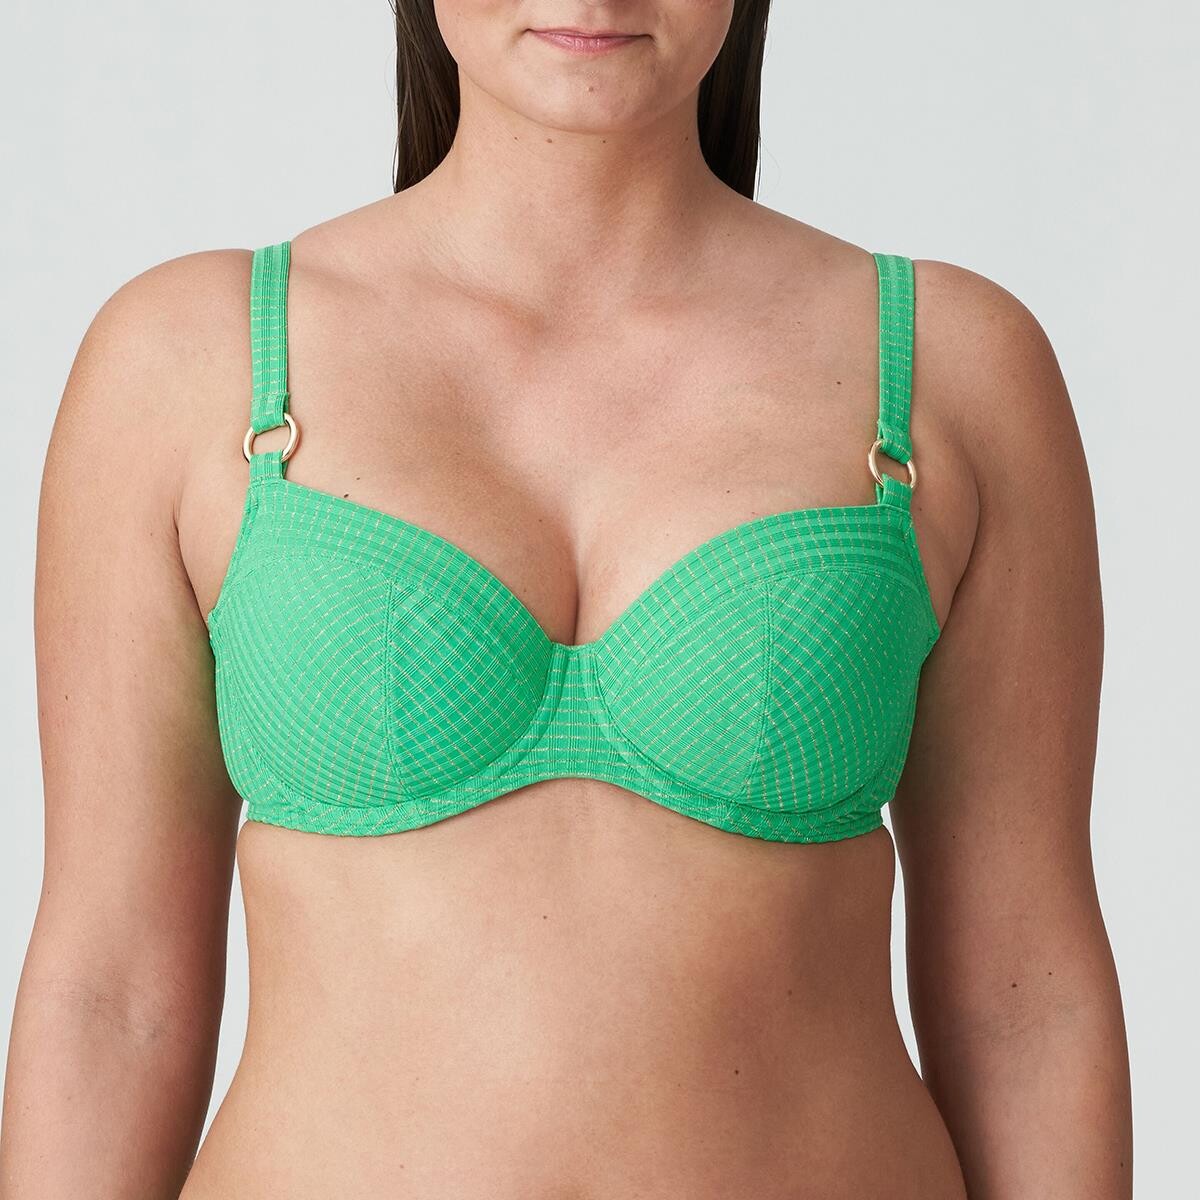 Primadonna Maringa Bikini Top Lug, Farve: Lush Grøn, Størrelse: 75H, Dame